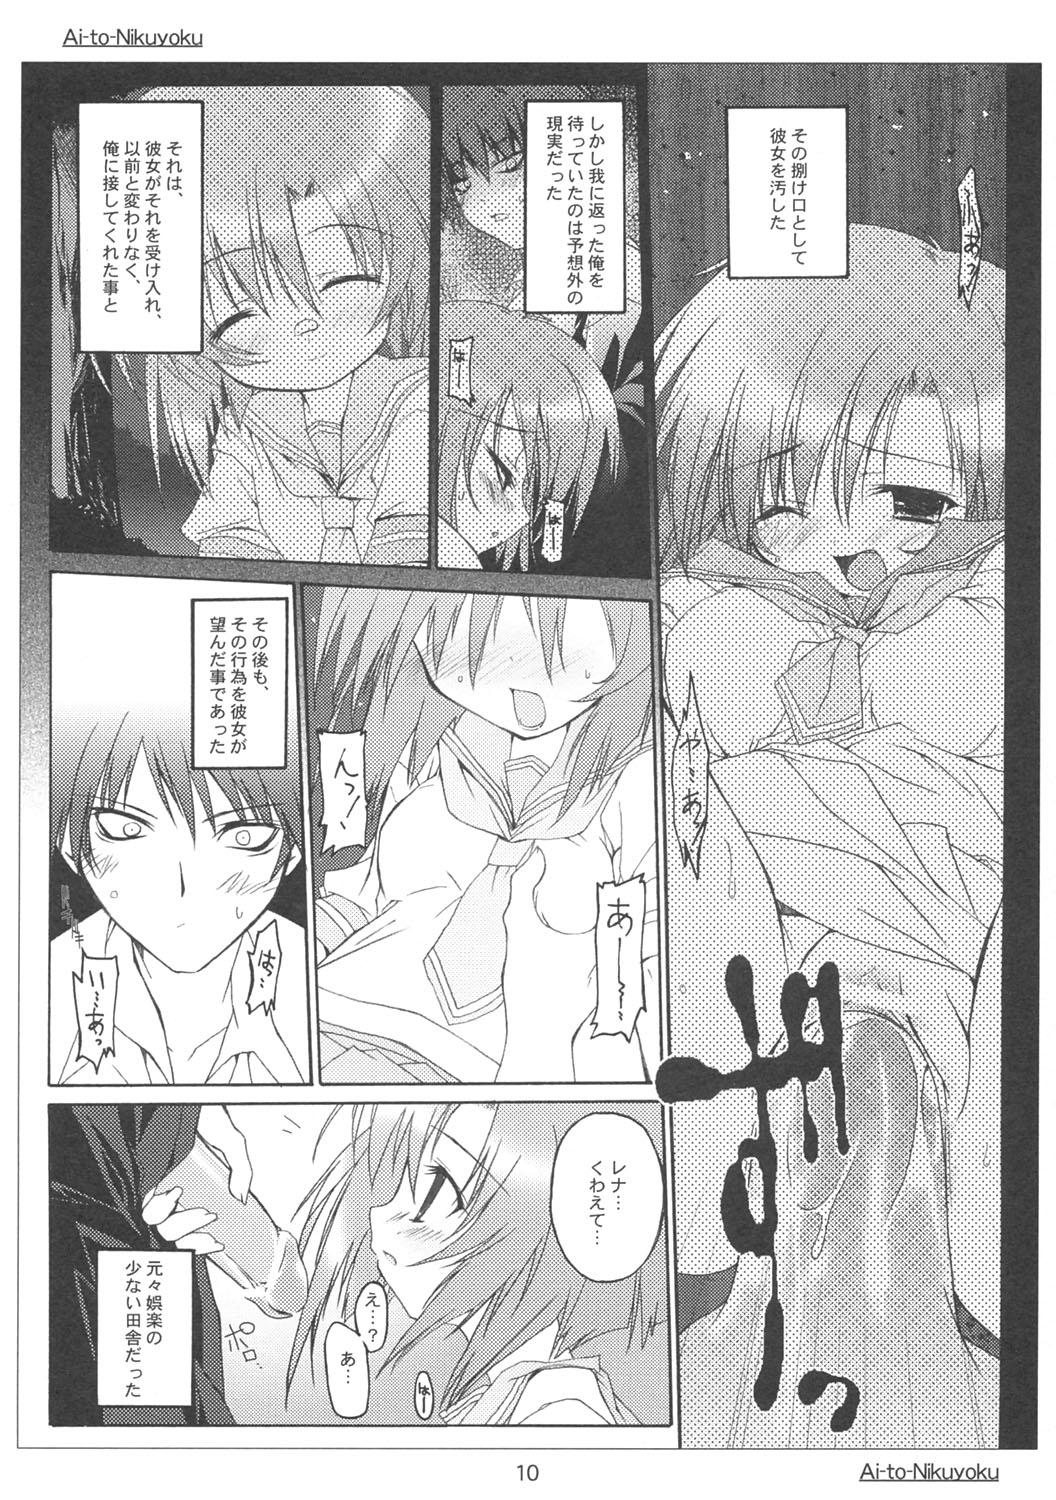 Blows Ai to Nikuyoku - Higurashi no naku koro ni Mom - Page 9